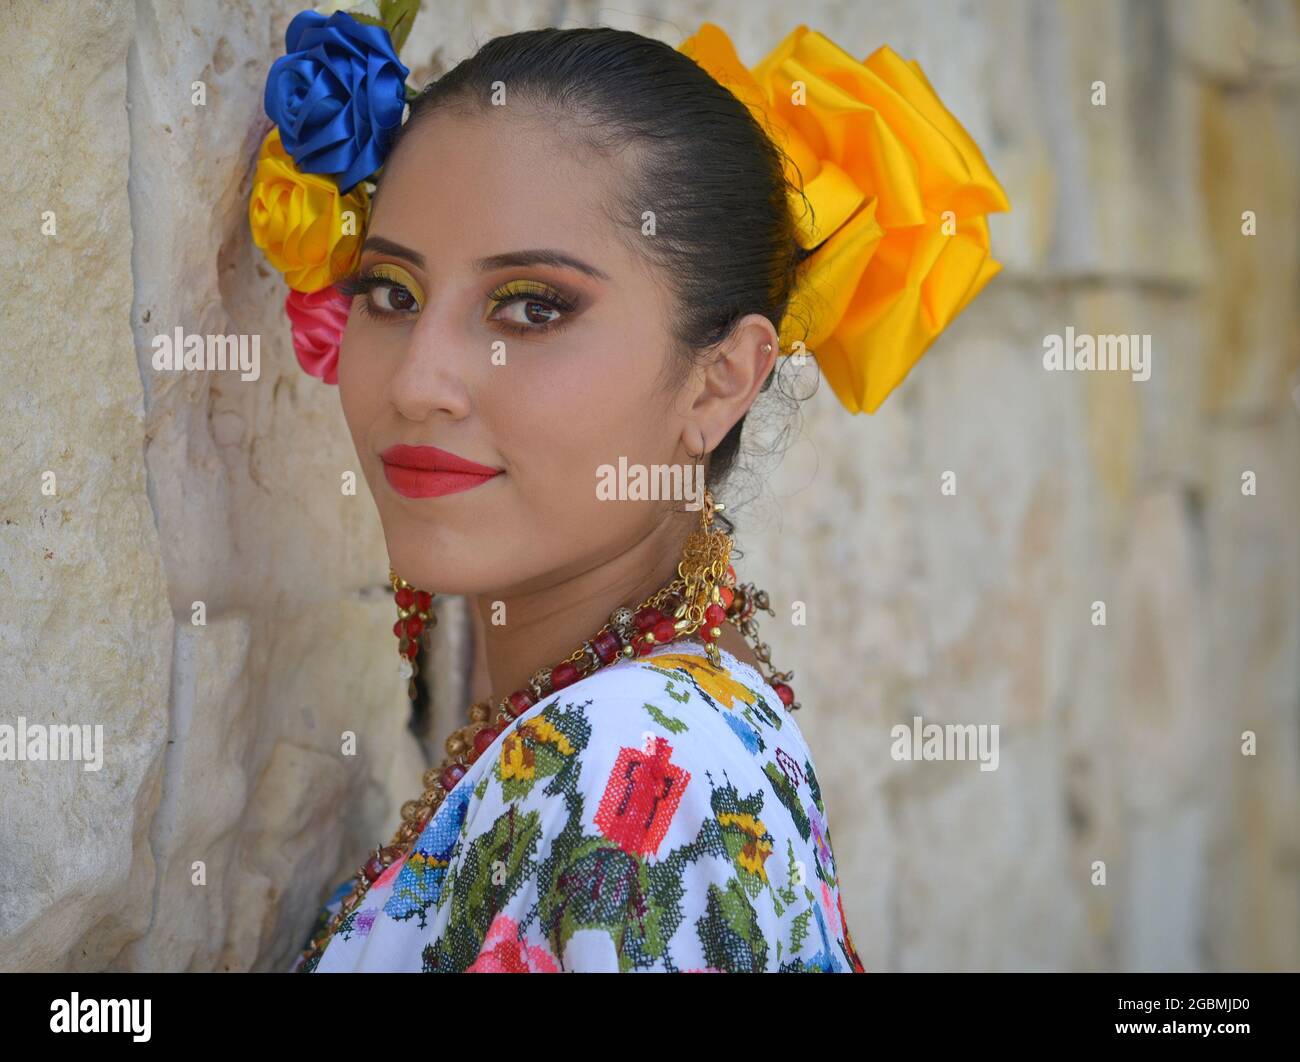 Jeune magnifique danseuse folklorique mexicaine Yucatecan porte une robe folklorique traditionnelle avec des fleurs colorées dans ses cheveux et regarde par-dessus son épaule. Banque D'Images